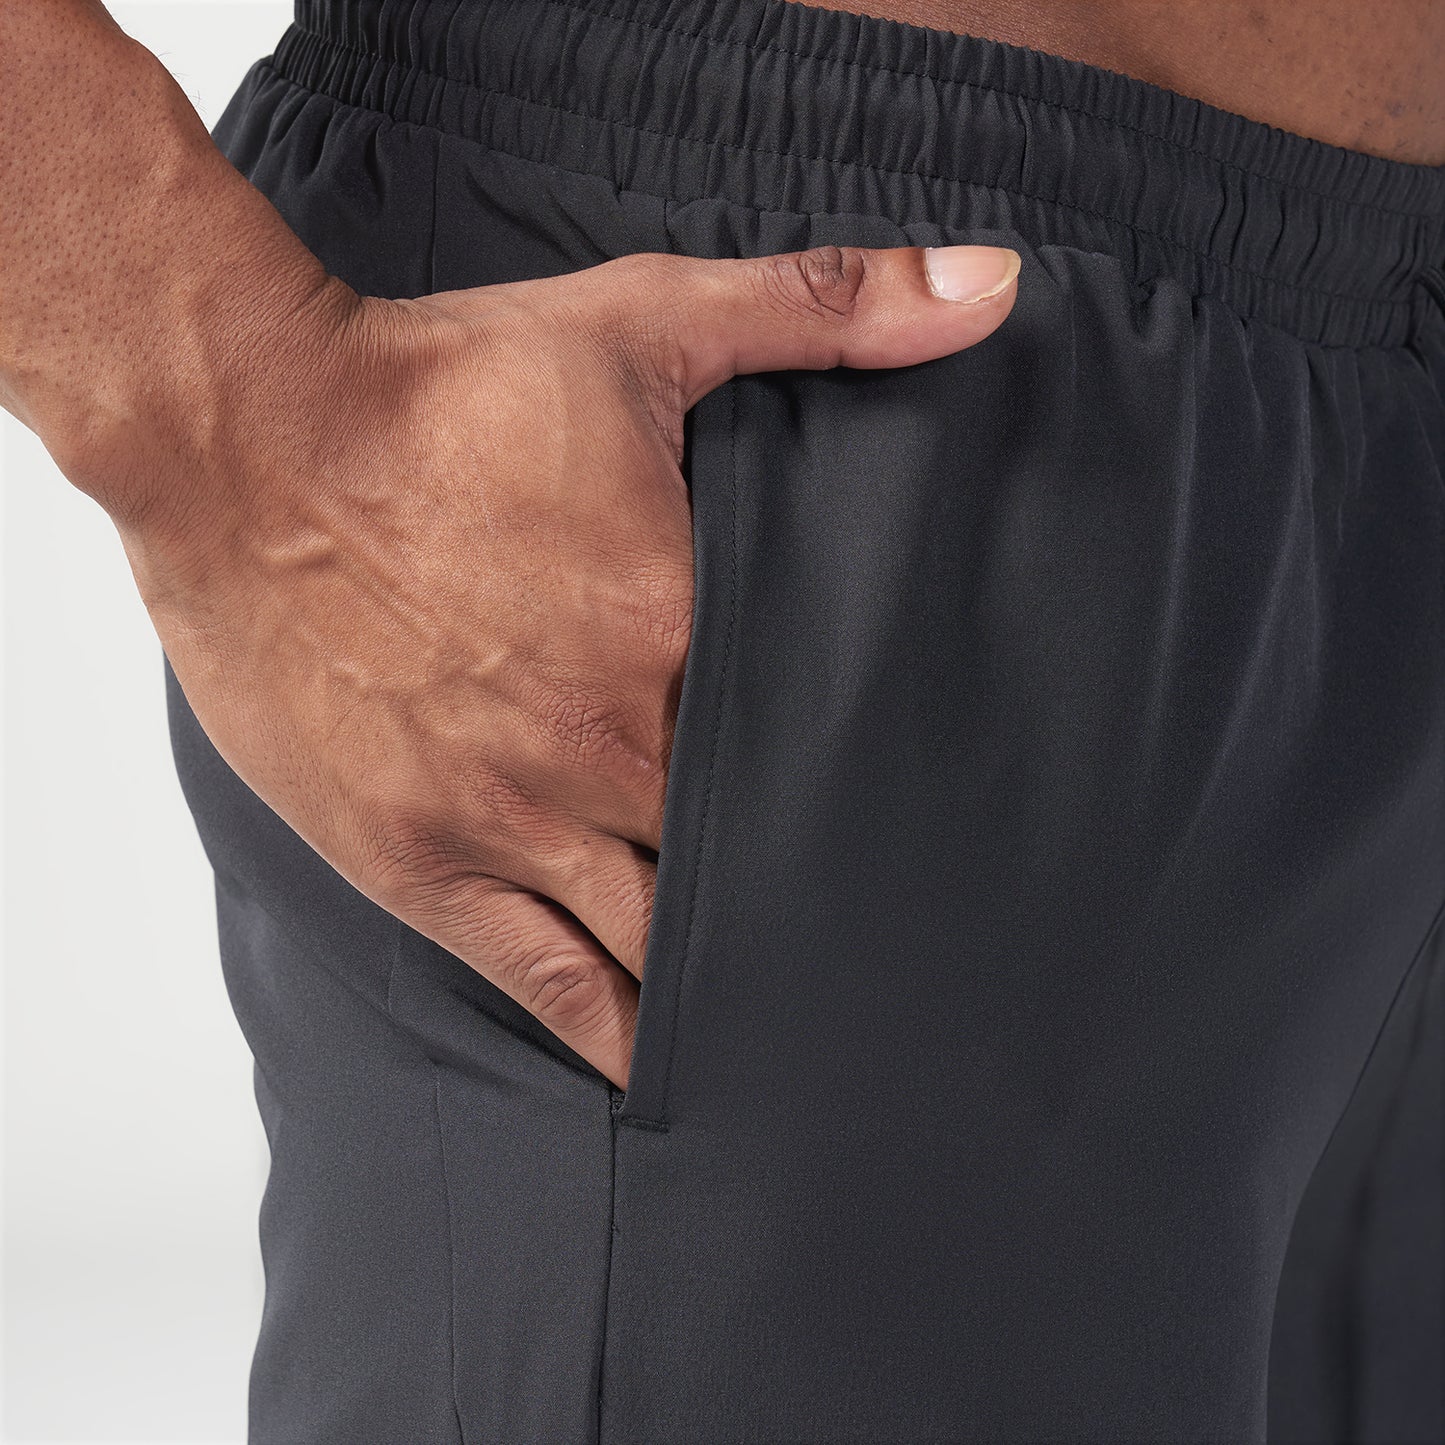 AE | Essential 7 Inch Shorts - Black | Gym Shorts Men | SQUATWOLF